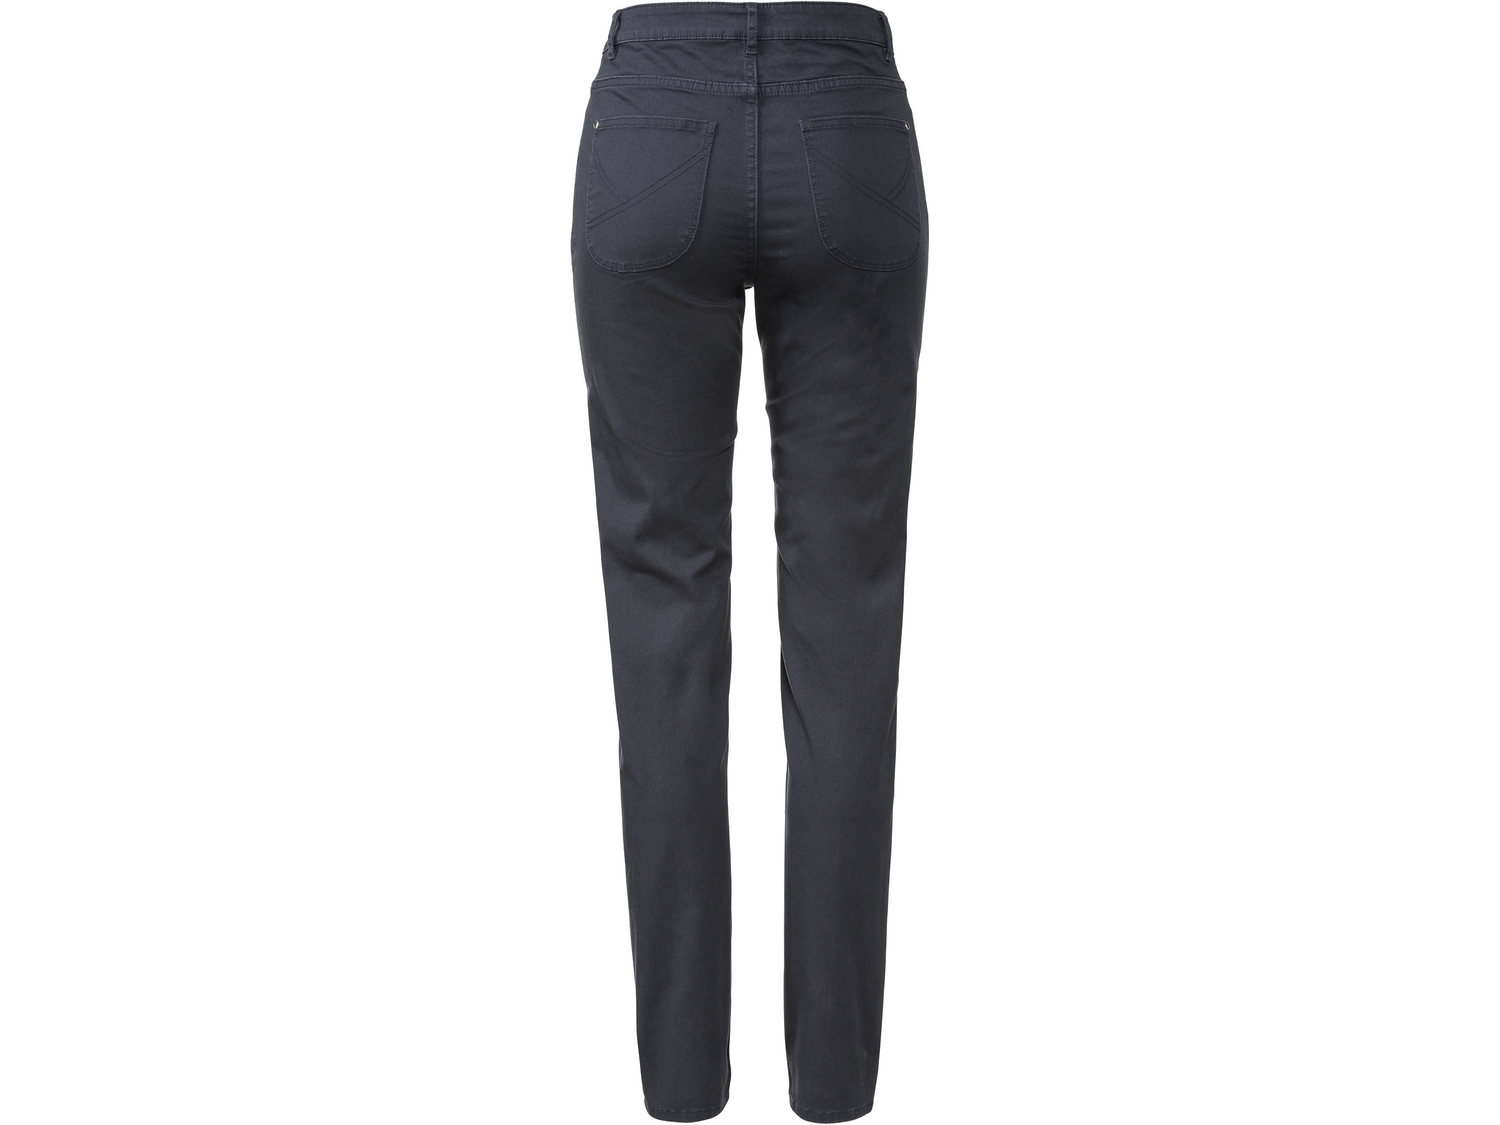 Spodnie twillowe Esmara, cena 39,99 PLN 
- 98% bawełny, 2% elastanu (LYCRA®)
- ...